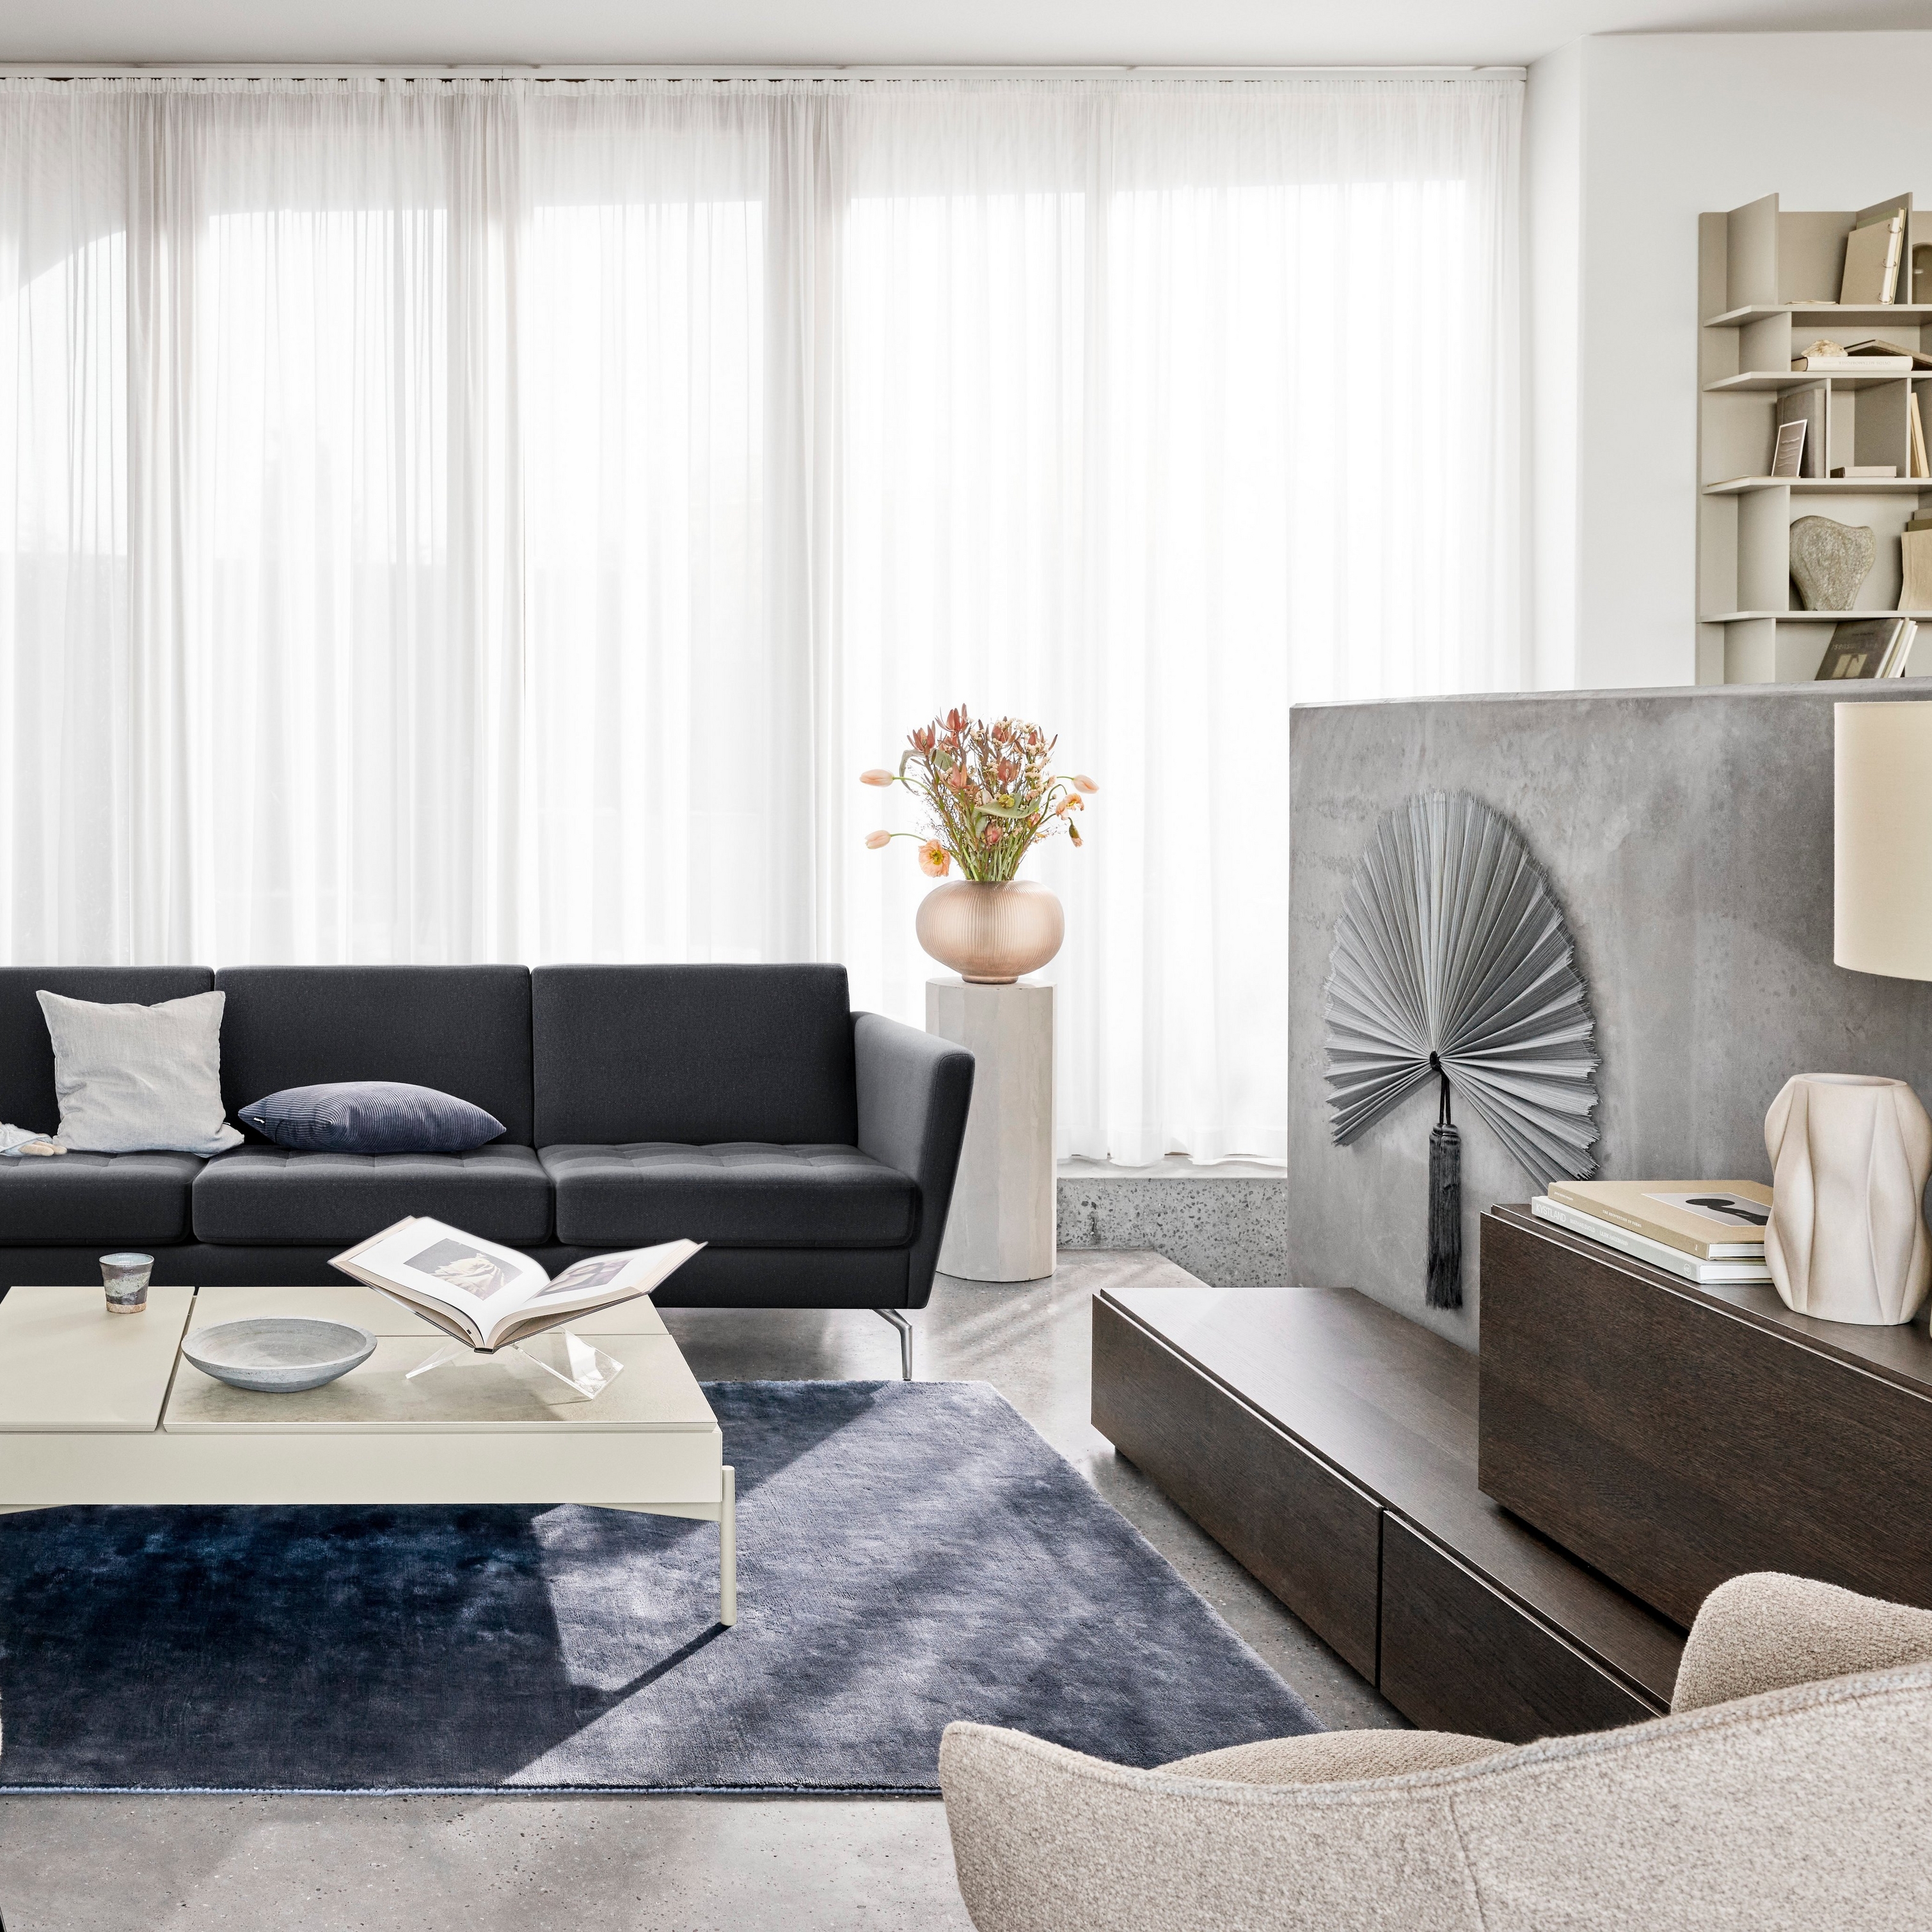 採用黑色沙發、椅子、透明窗簾和裝飾元素的現代起居空間。